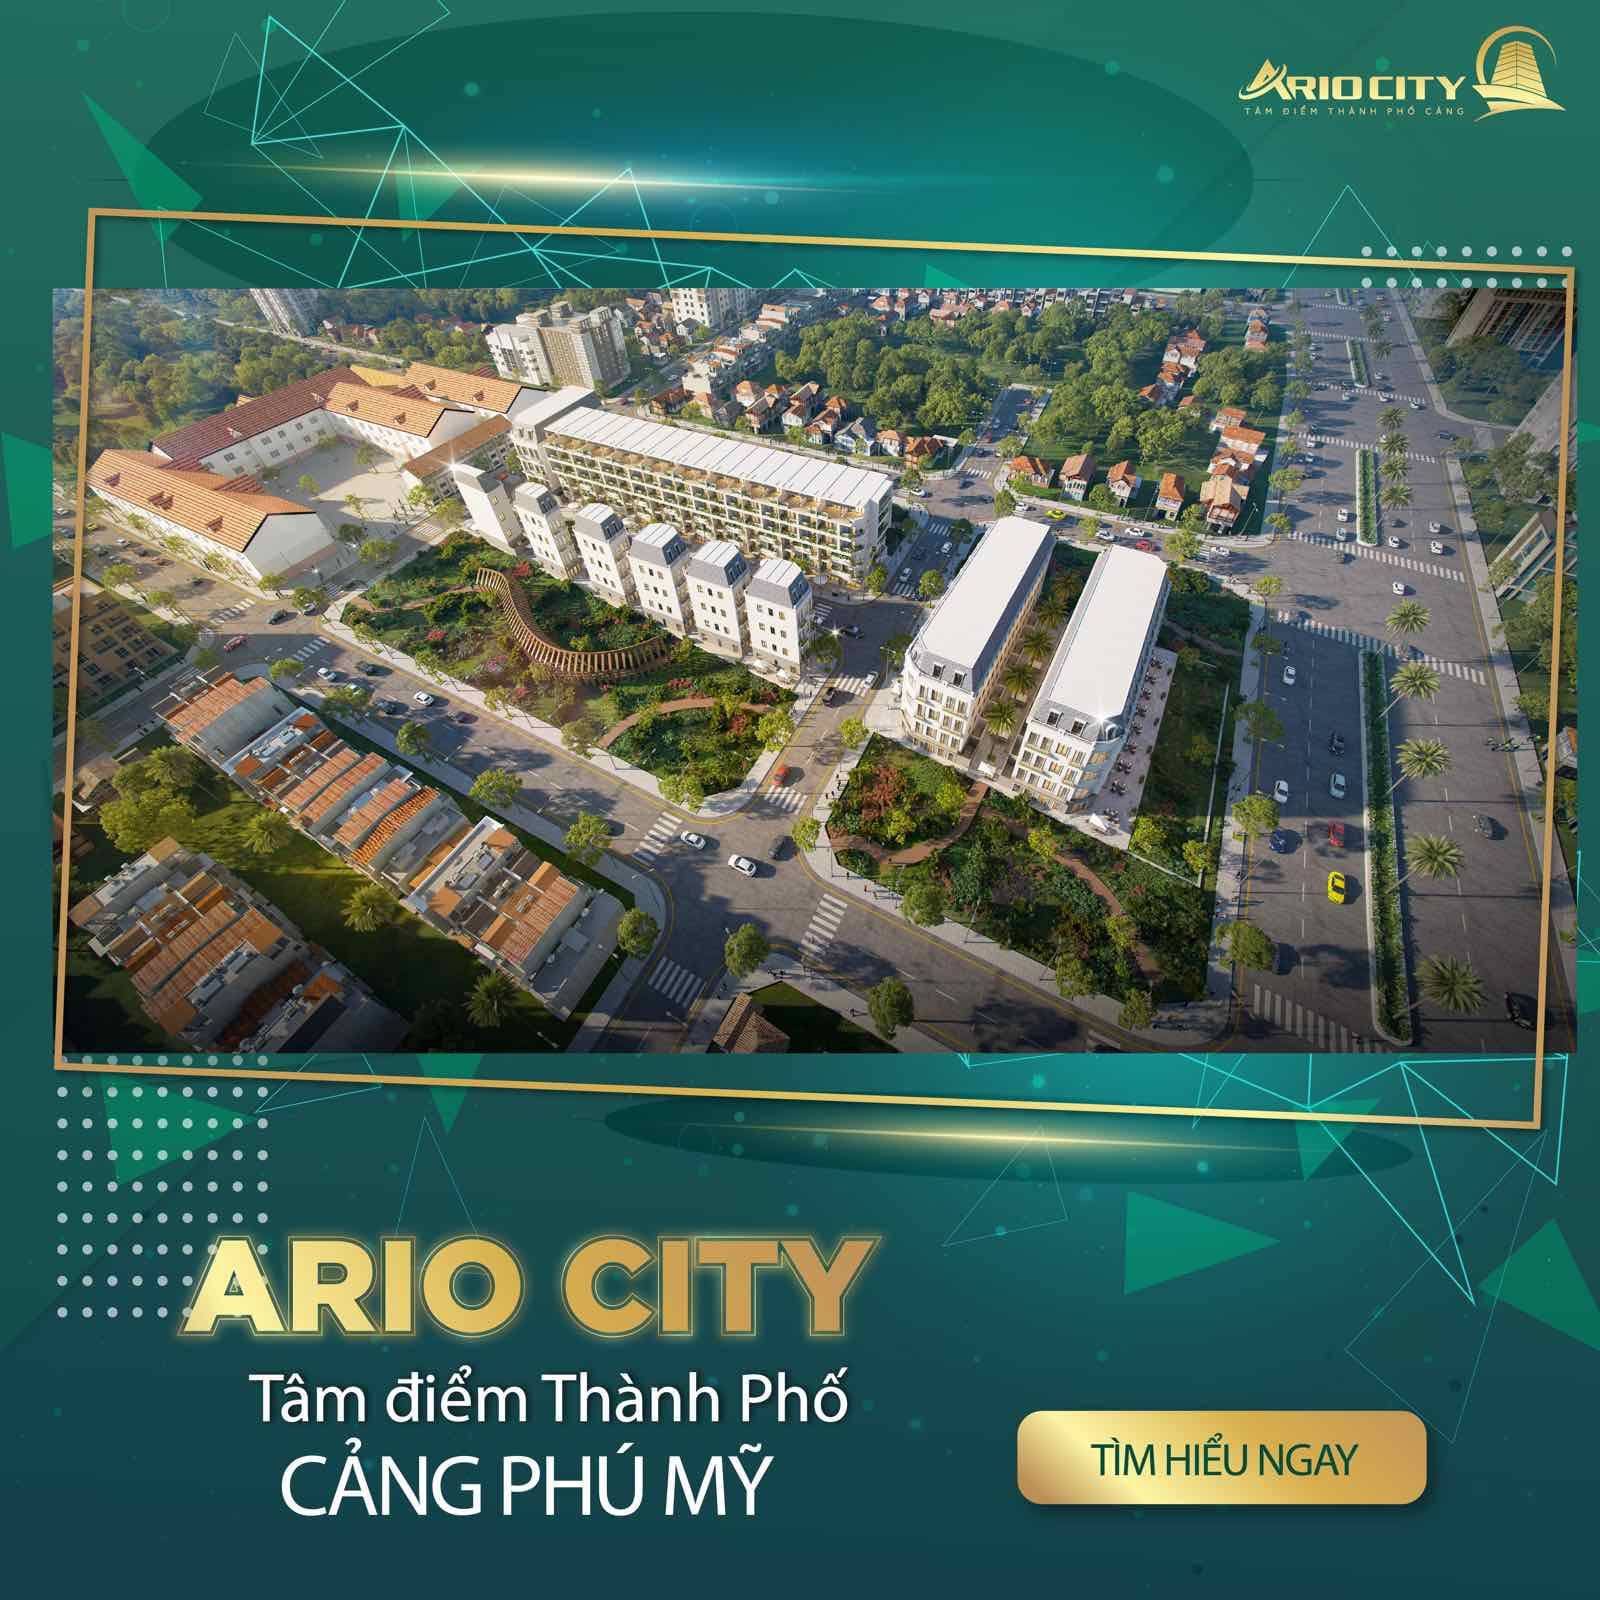 Ario City Phu My